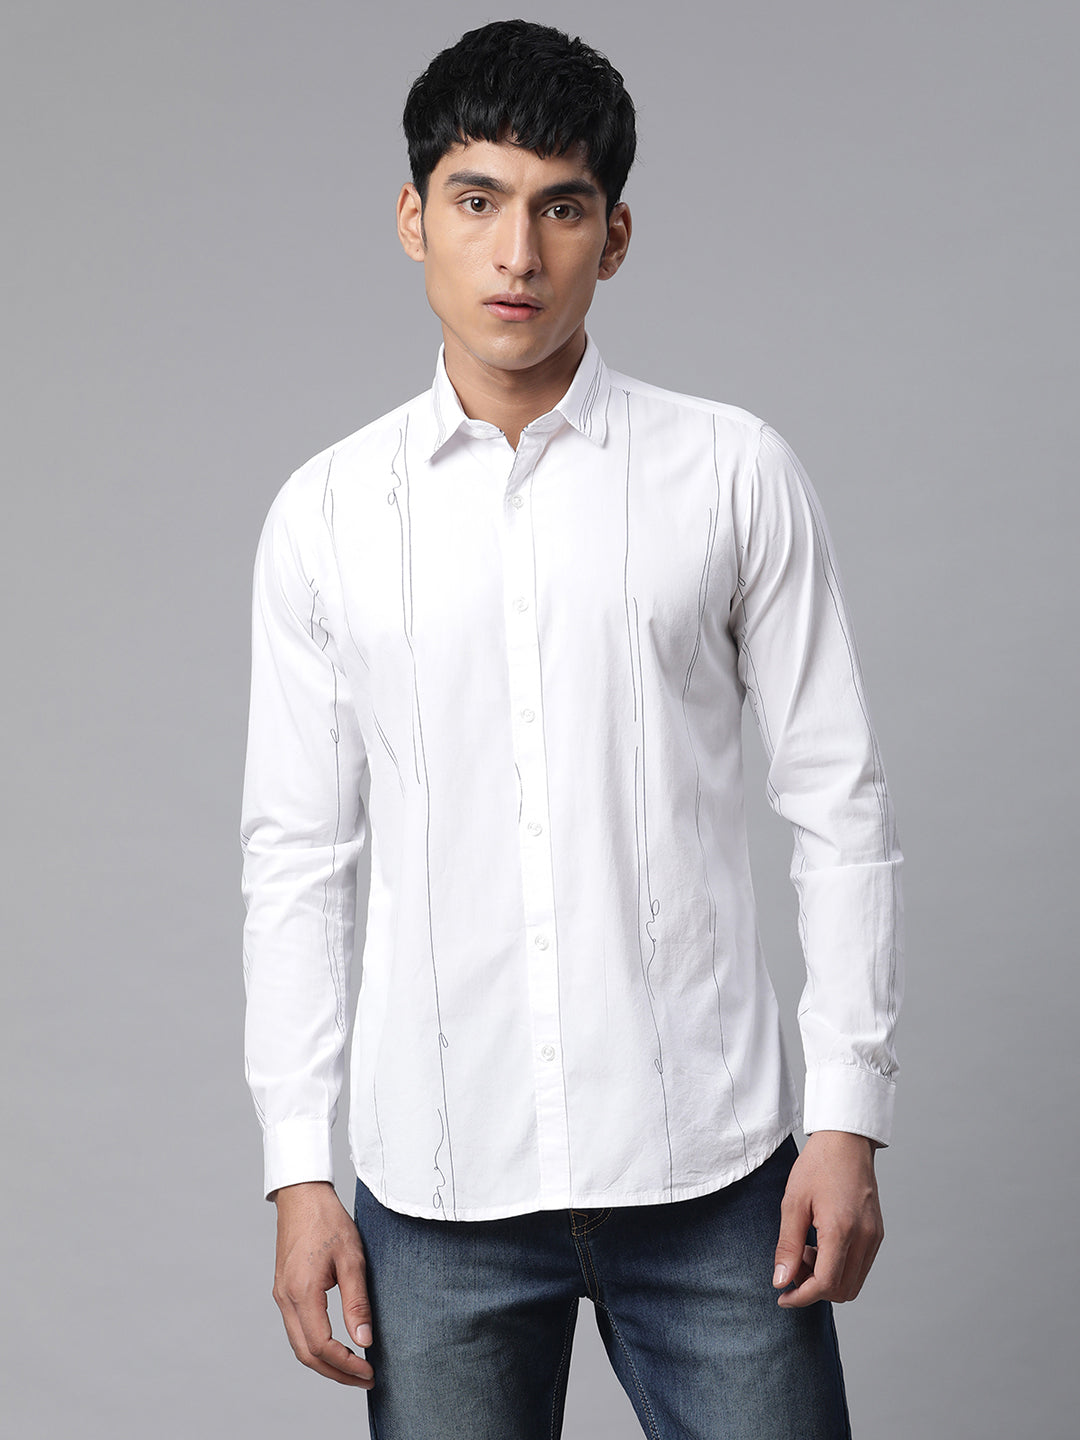 Men White Casual Full Sleeve Plain Shirt